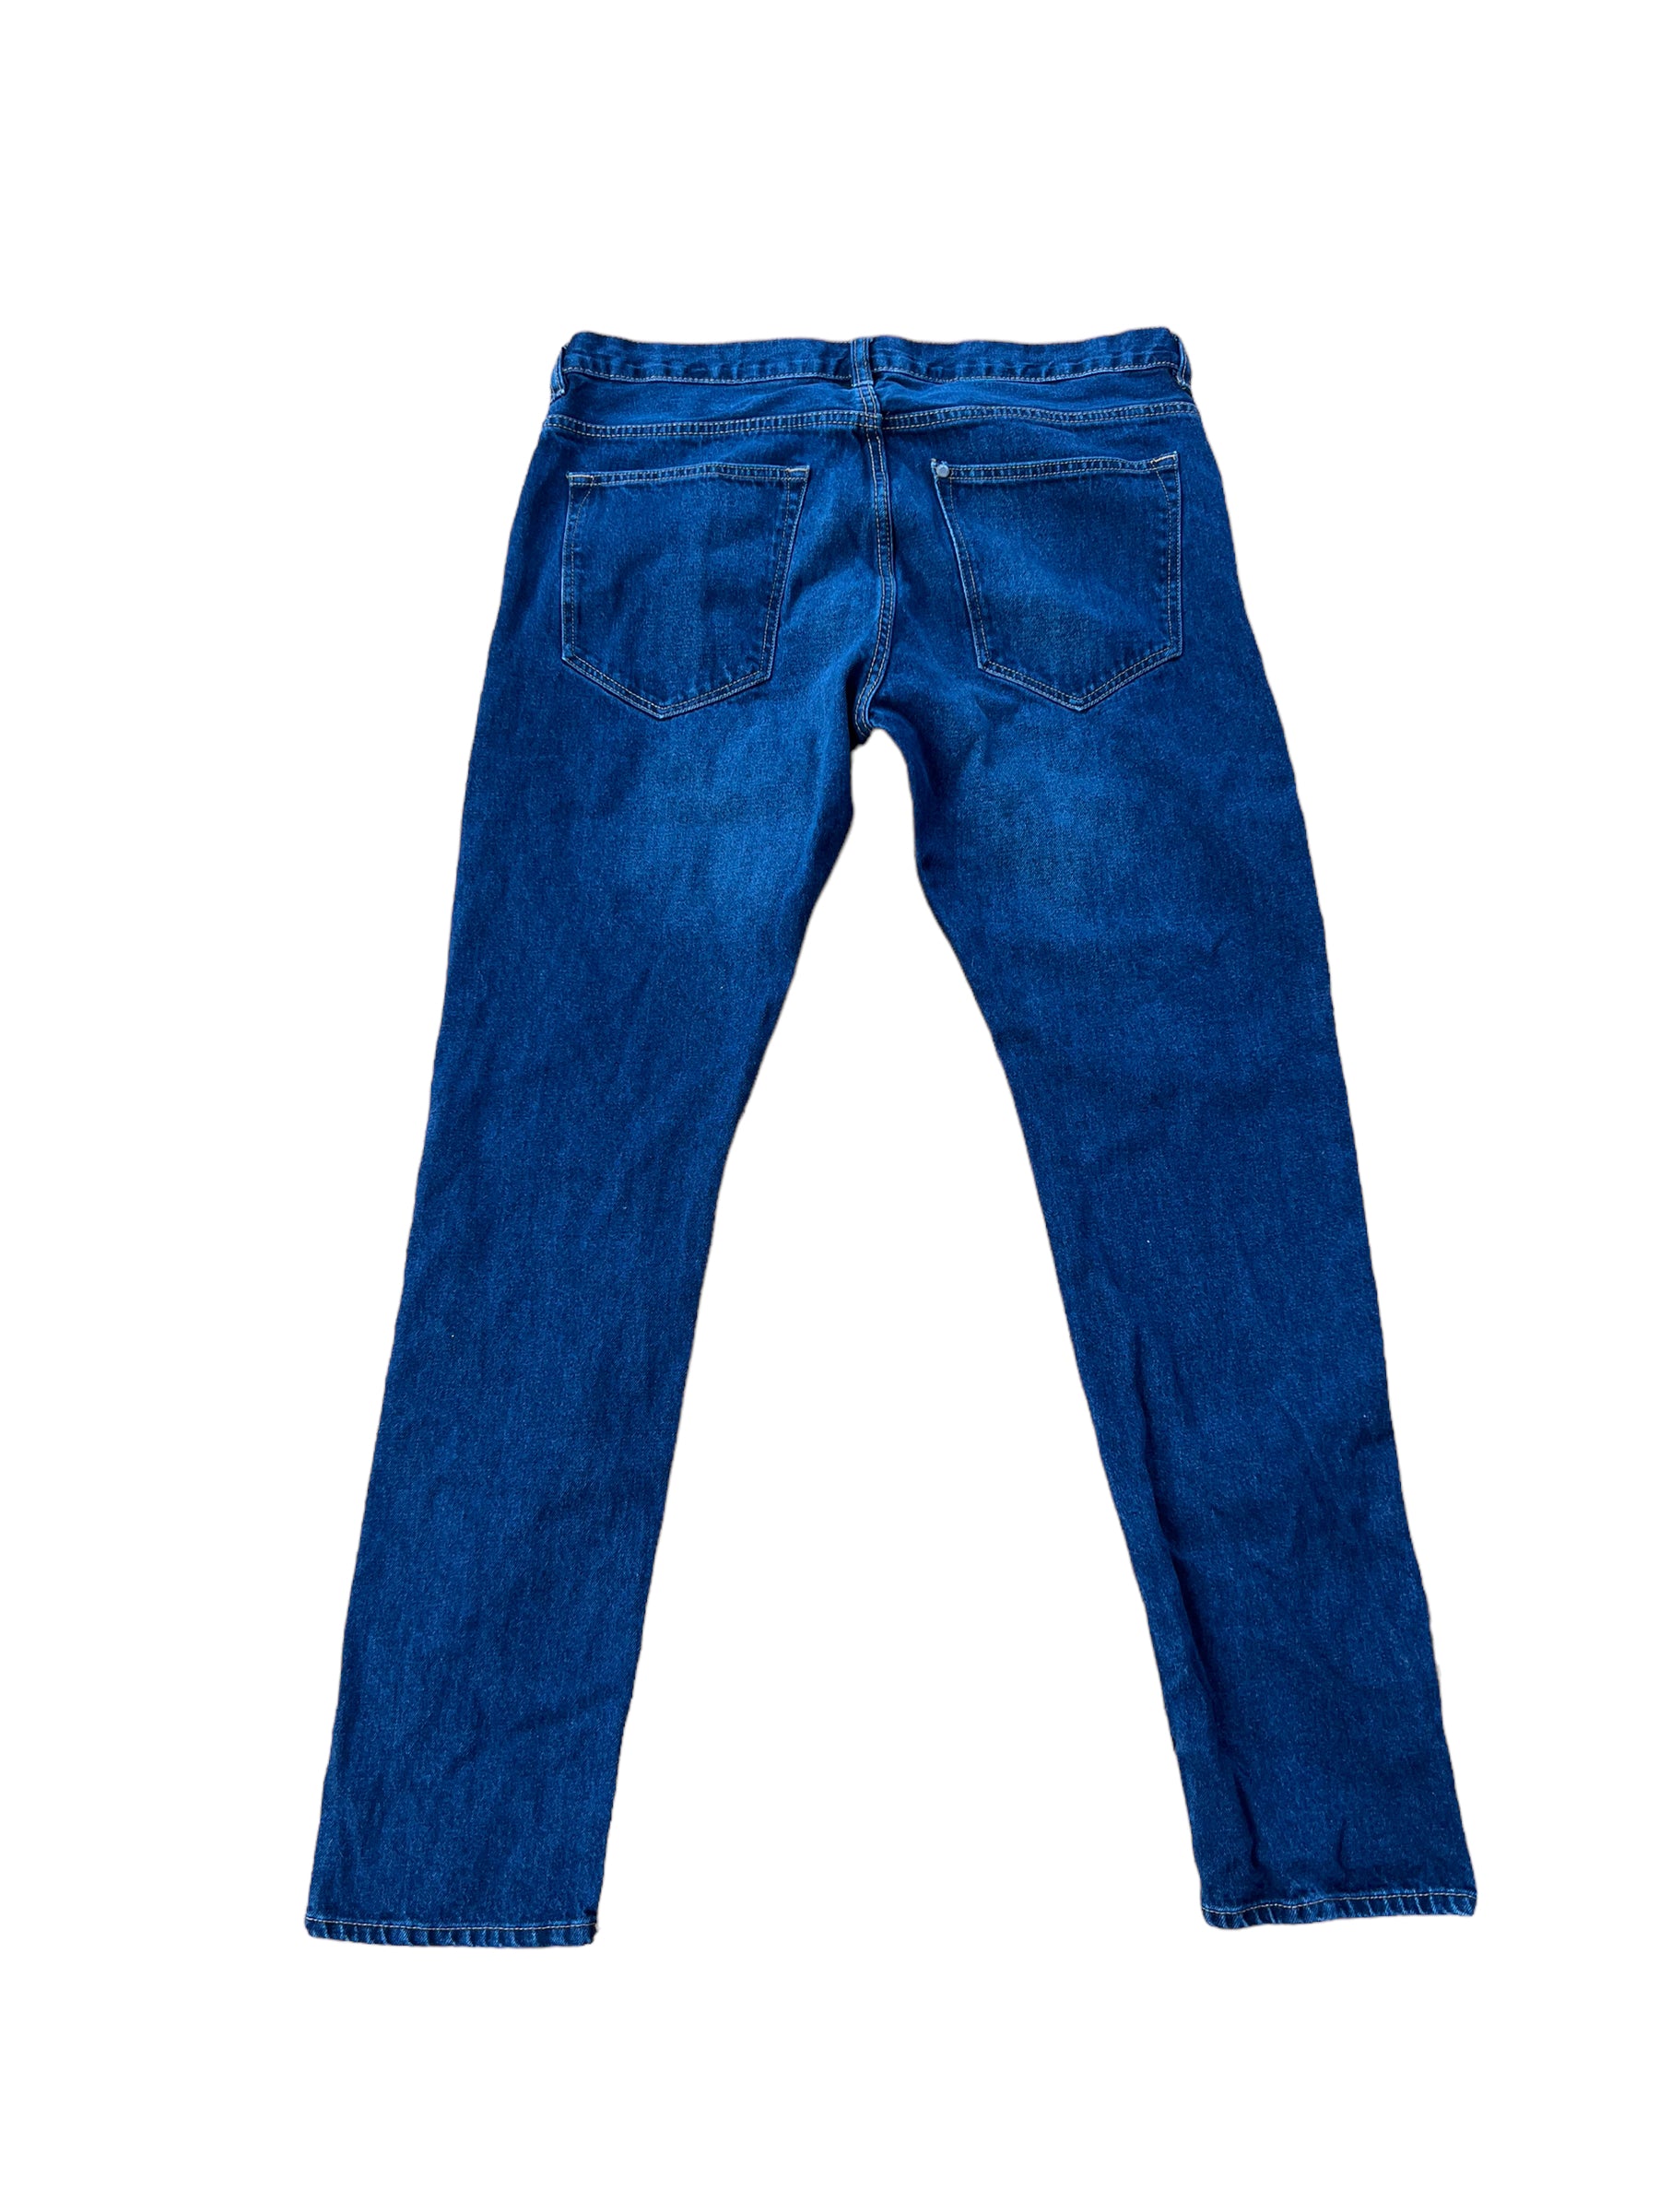 Men's blue jeans  Shop denim fashion online